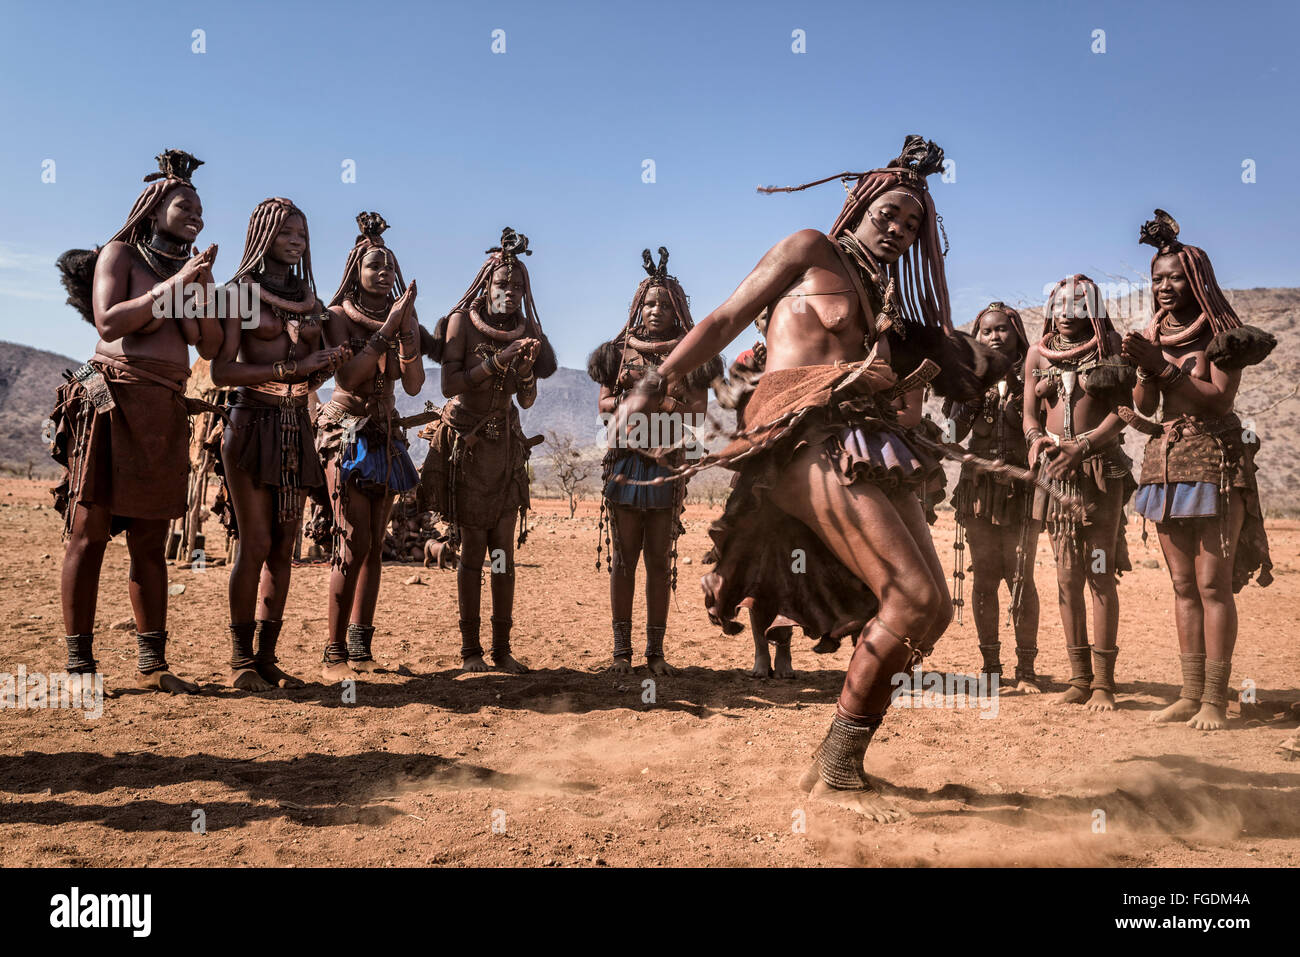 Gruppe Von Himba Frauen Tanzen Während Des Tages Stockfotografie Alamy 